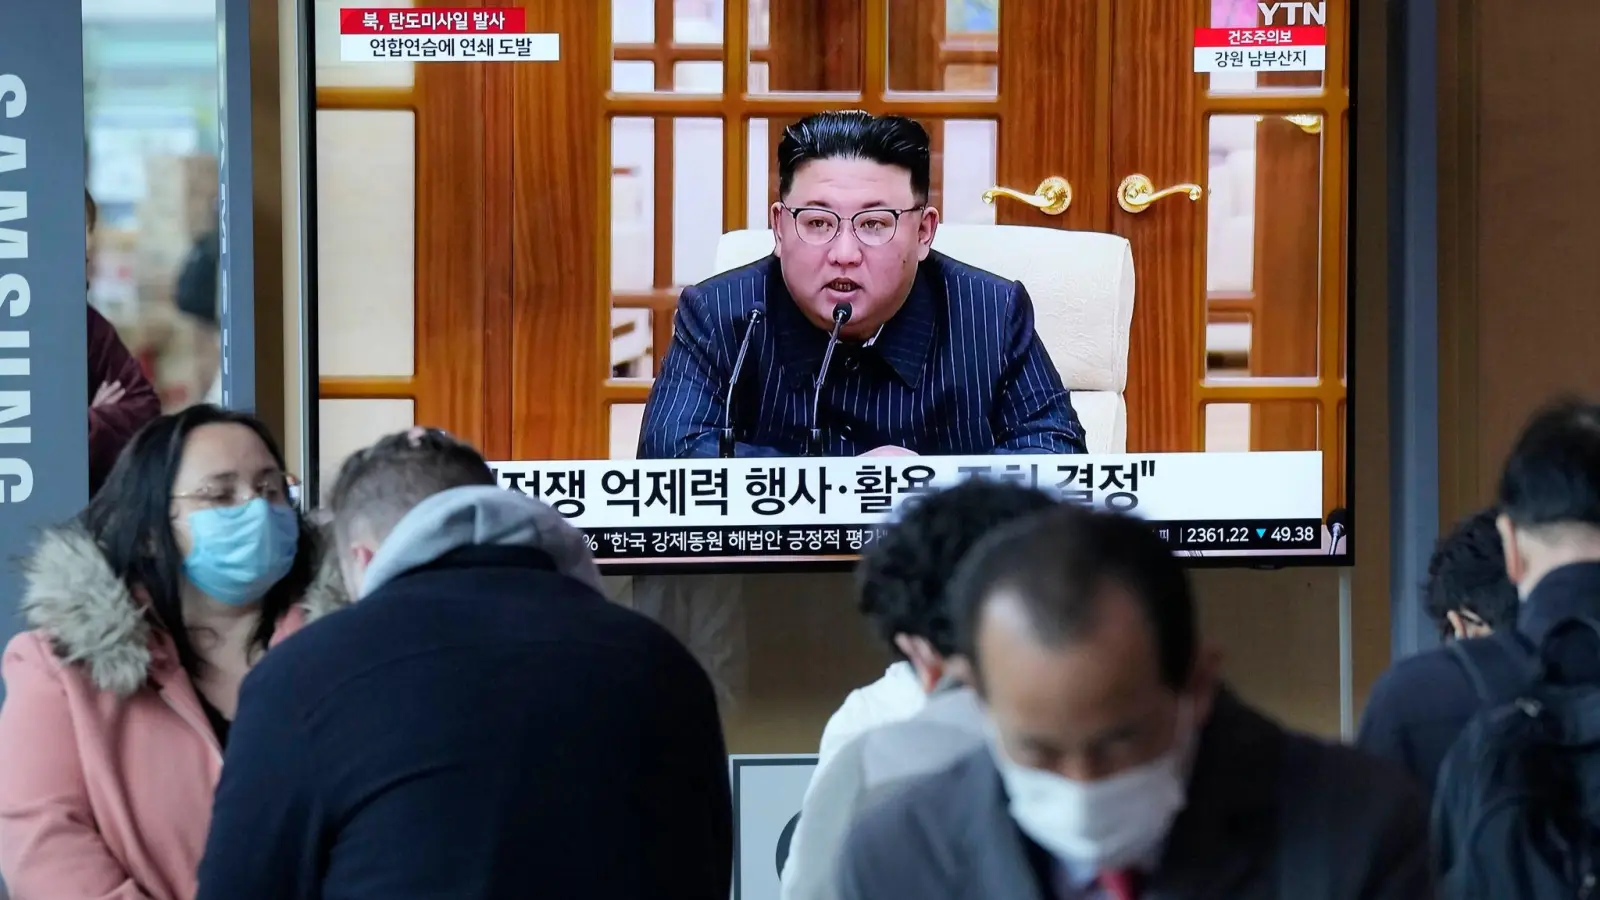 Fernsehbilder im Bahnhof von Seoul zeigen den nordkoreanischen Machthaber Kim Jong Un. (Foto: Ahn Young-joon/AP)